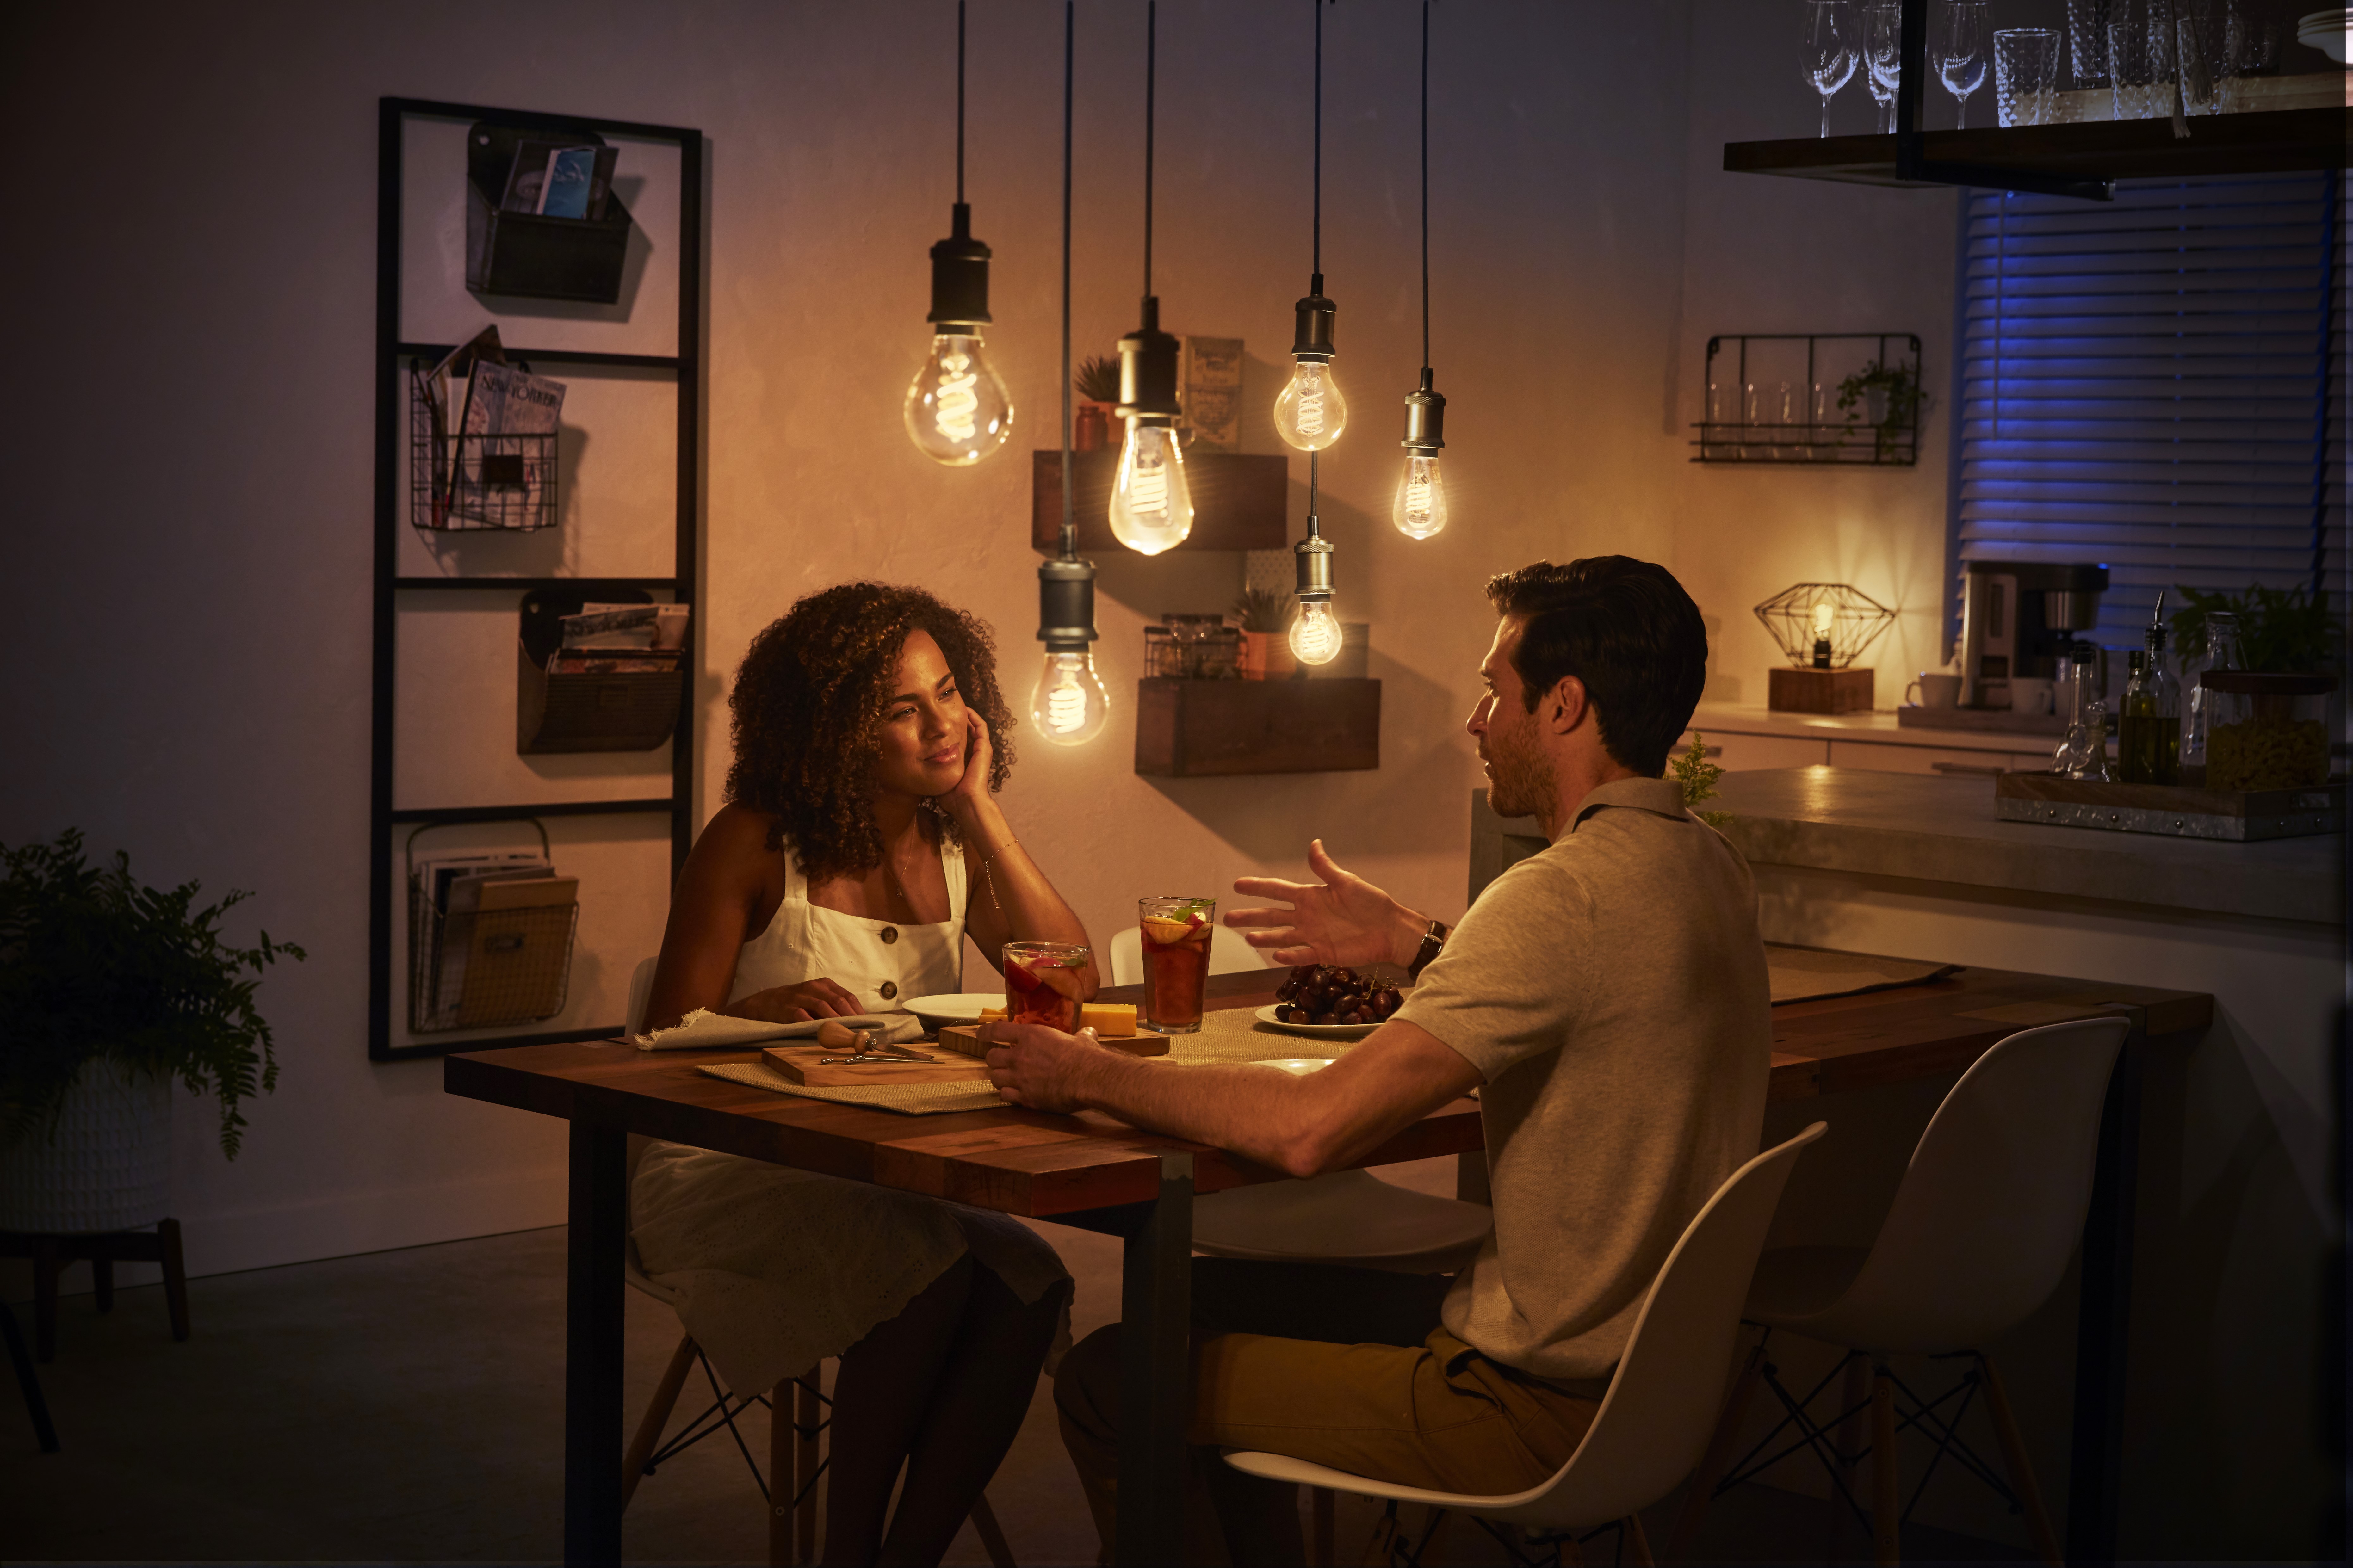 A nova coleo das lmpadas da Philips Hue combina o conforto da iluminao inteligente com a beleza da famosa lmpada de Edison...